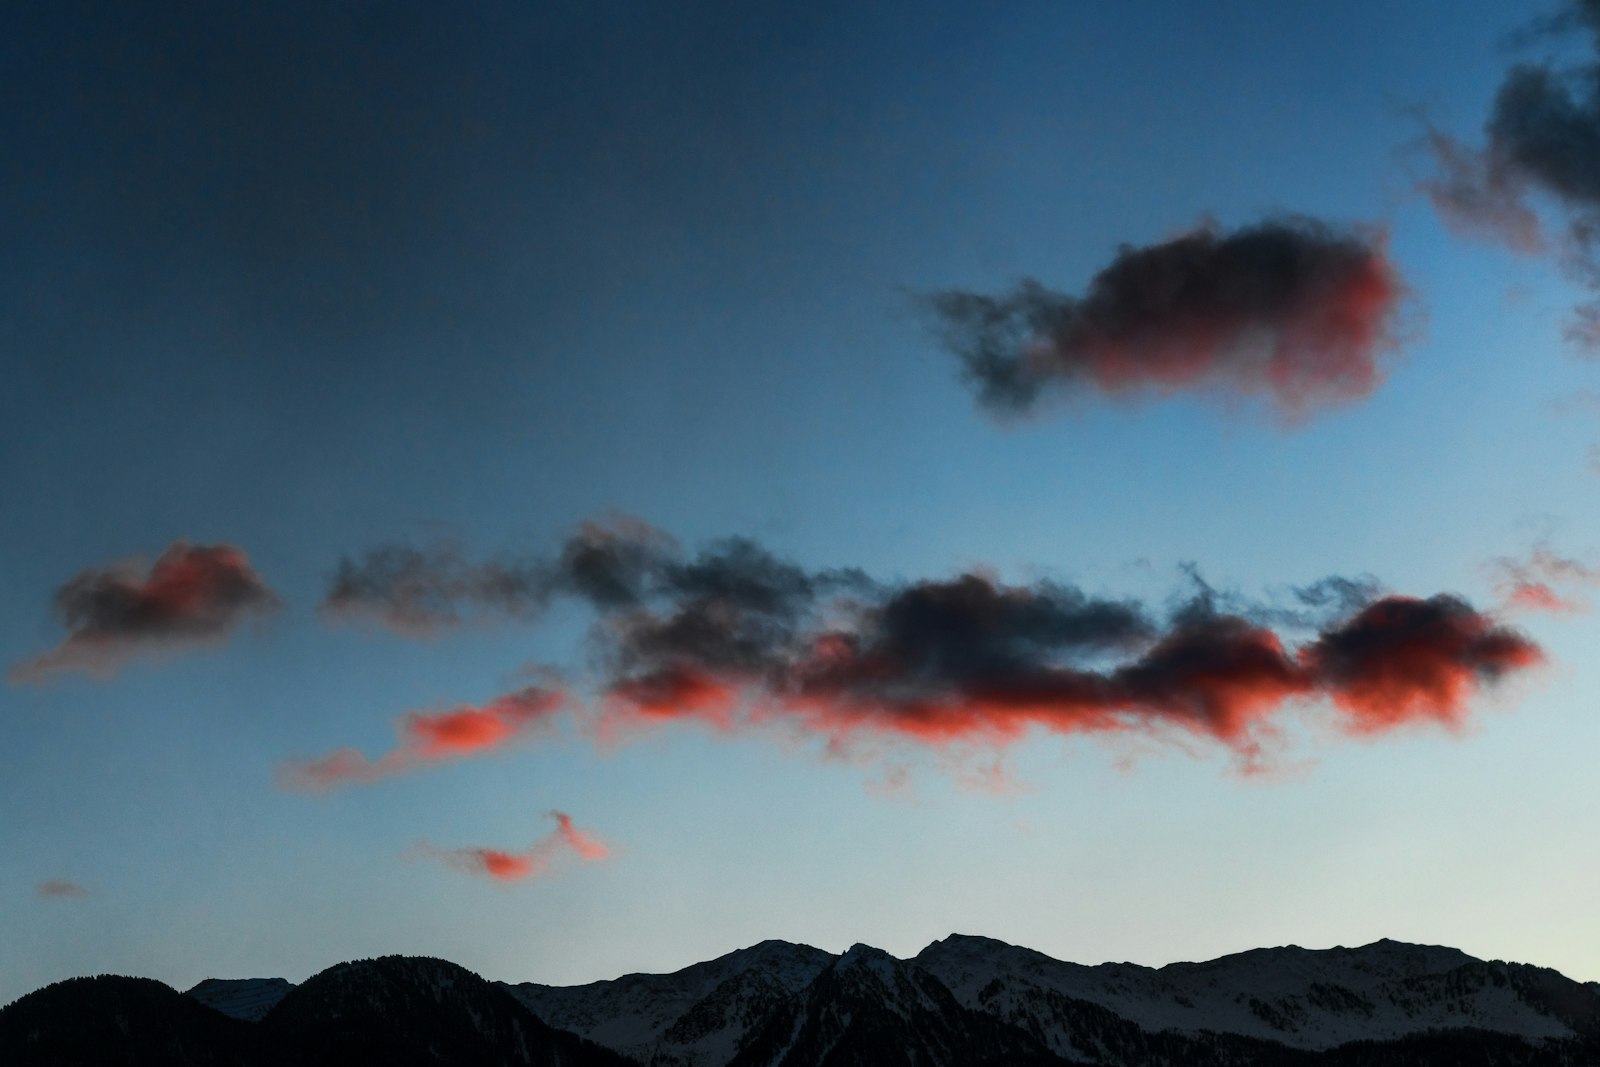 Canon EOS 70D sample photo. Mountain under cloudy sky photography